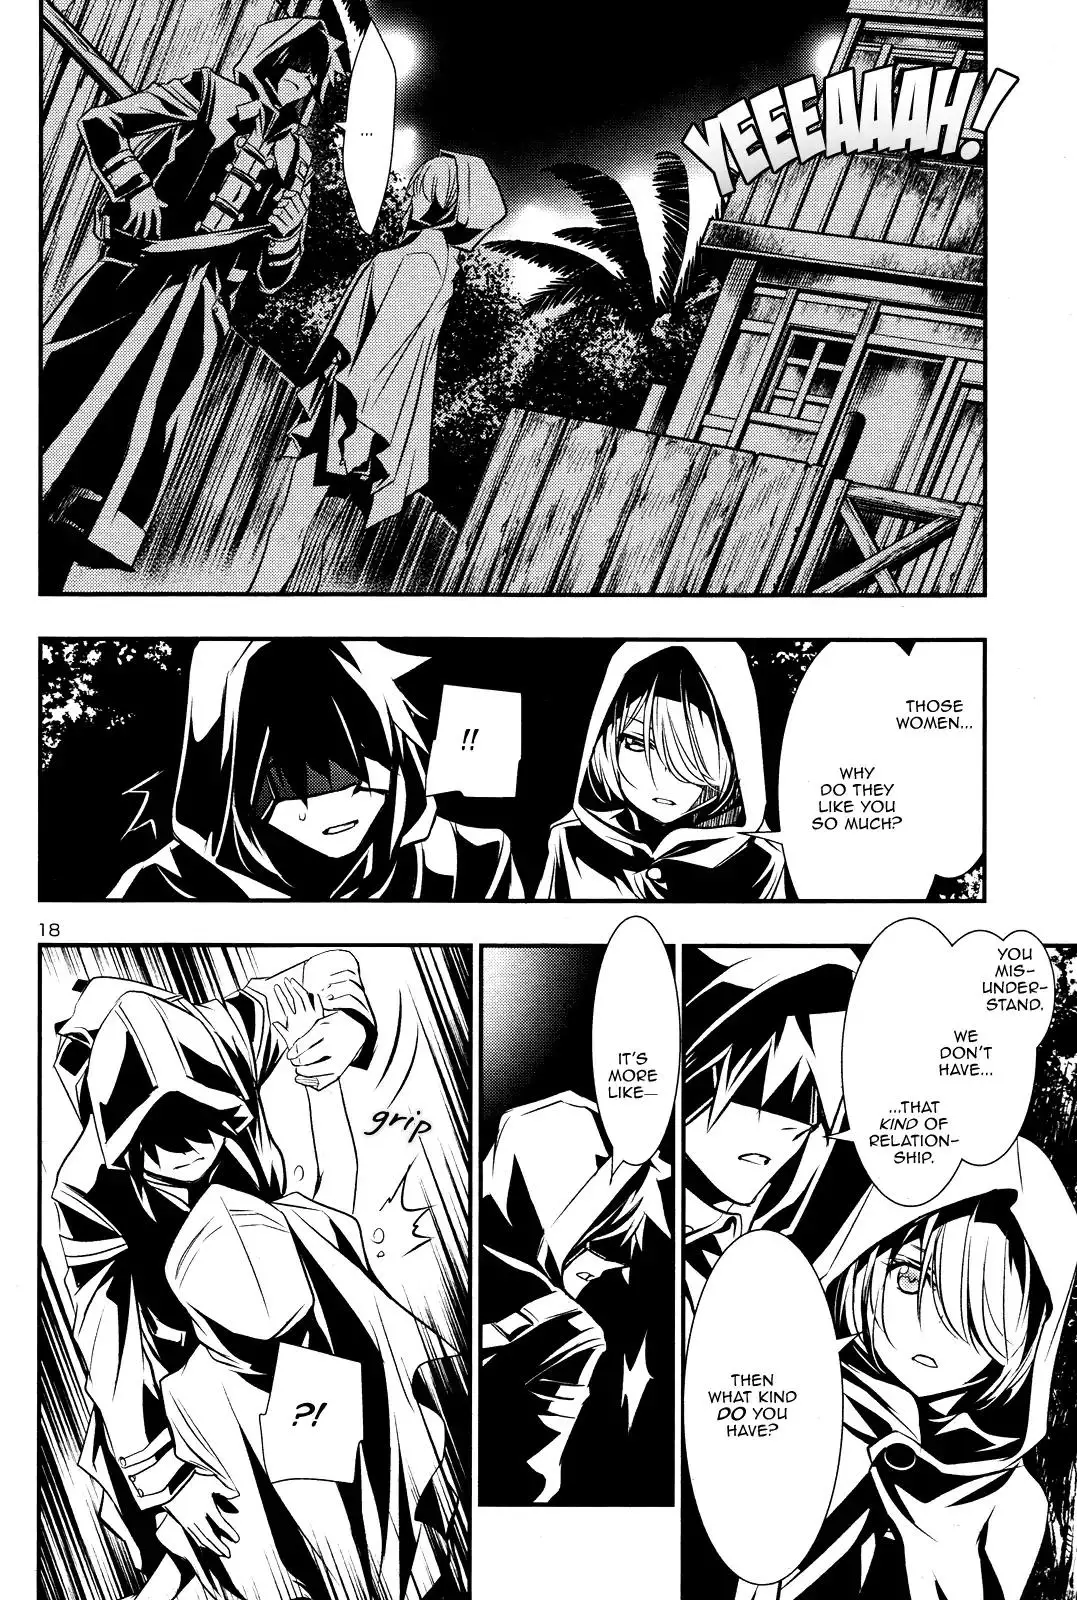 Shinju no Nectar - 15 page 15